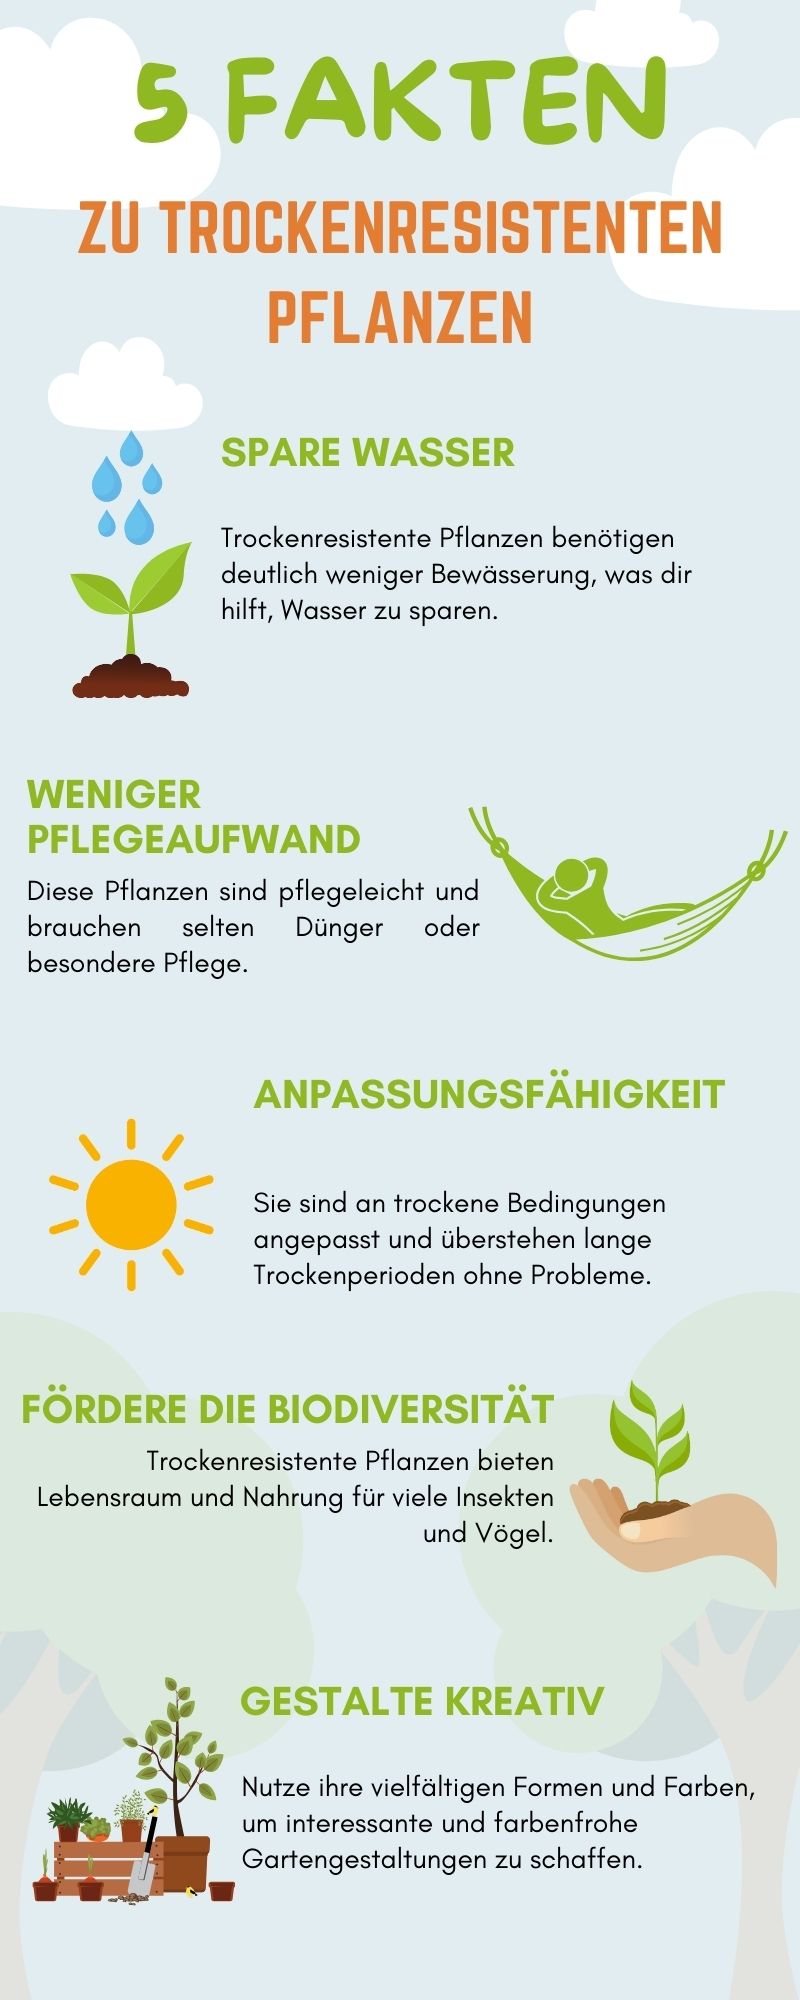 Infografik, die fünf Fakten zu trockenresistenten Pflanzen zeigt